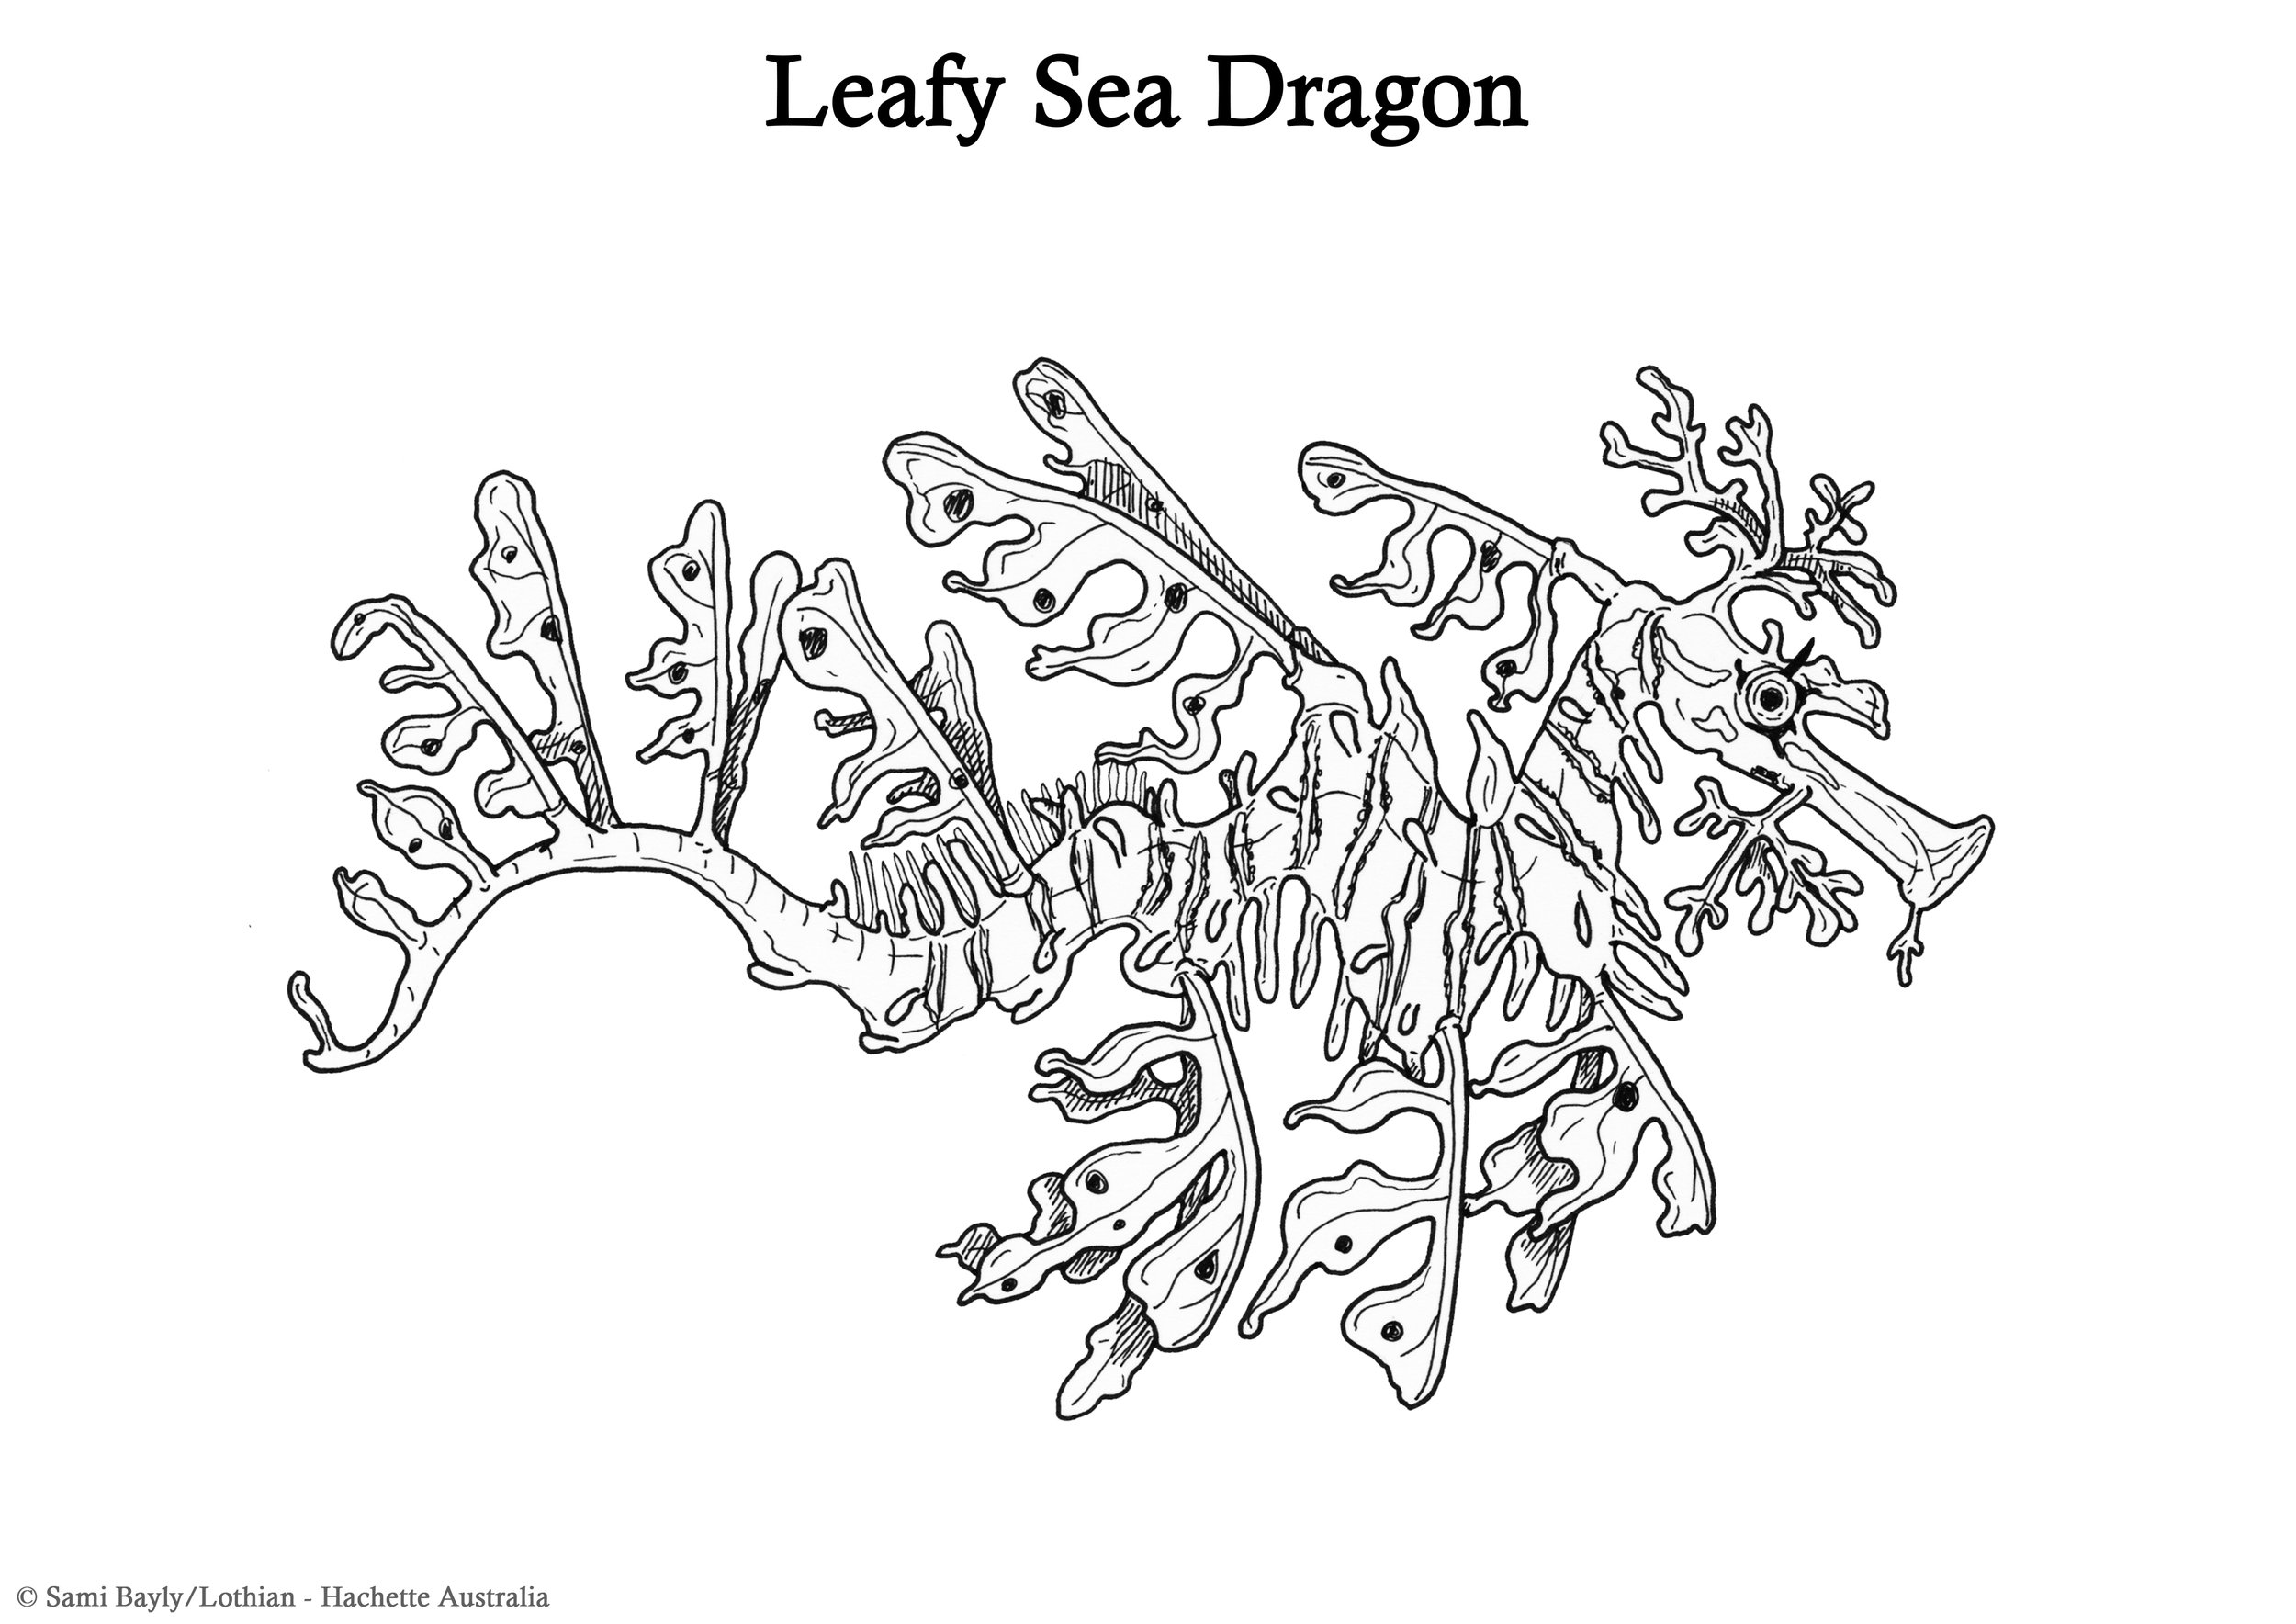 Leafy Sea Dragon Line Drawing.jpg